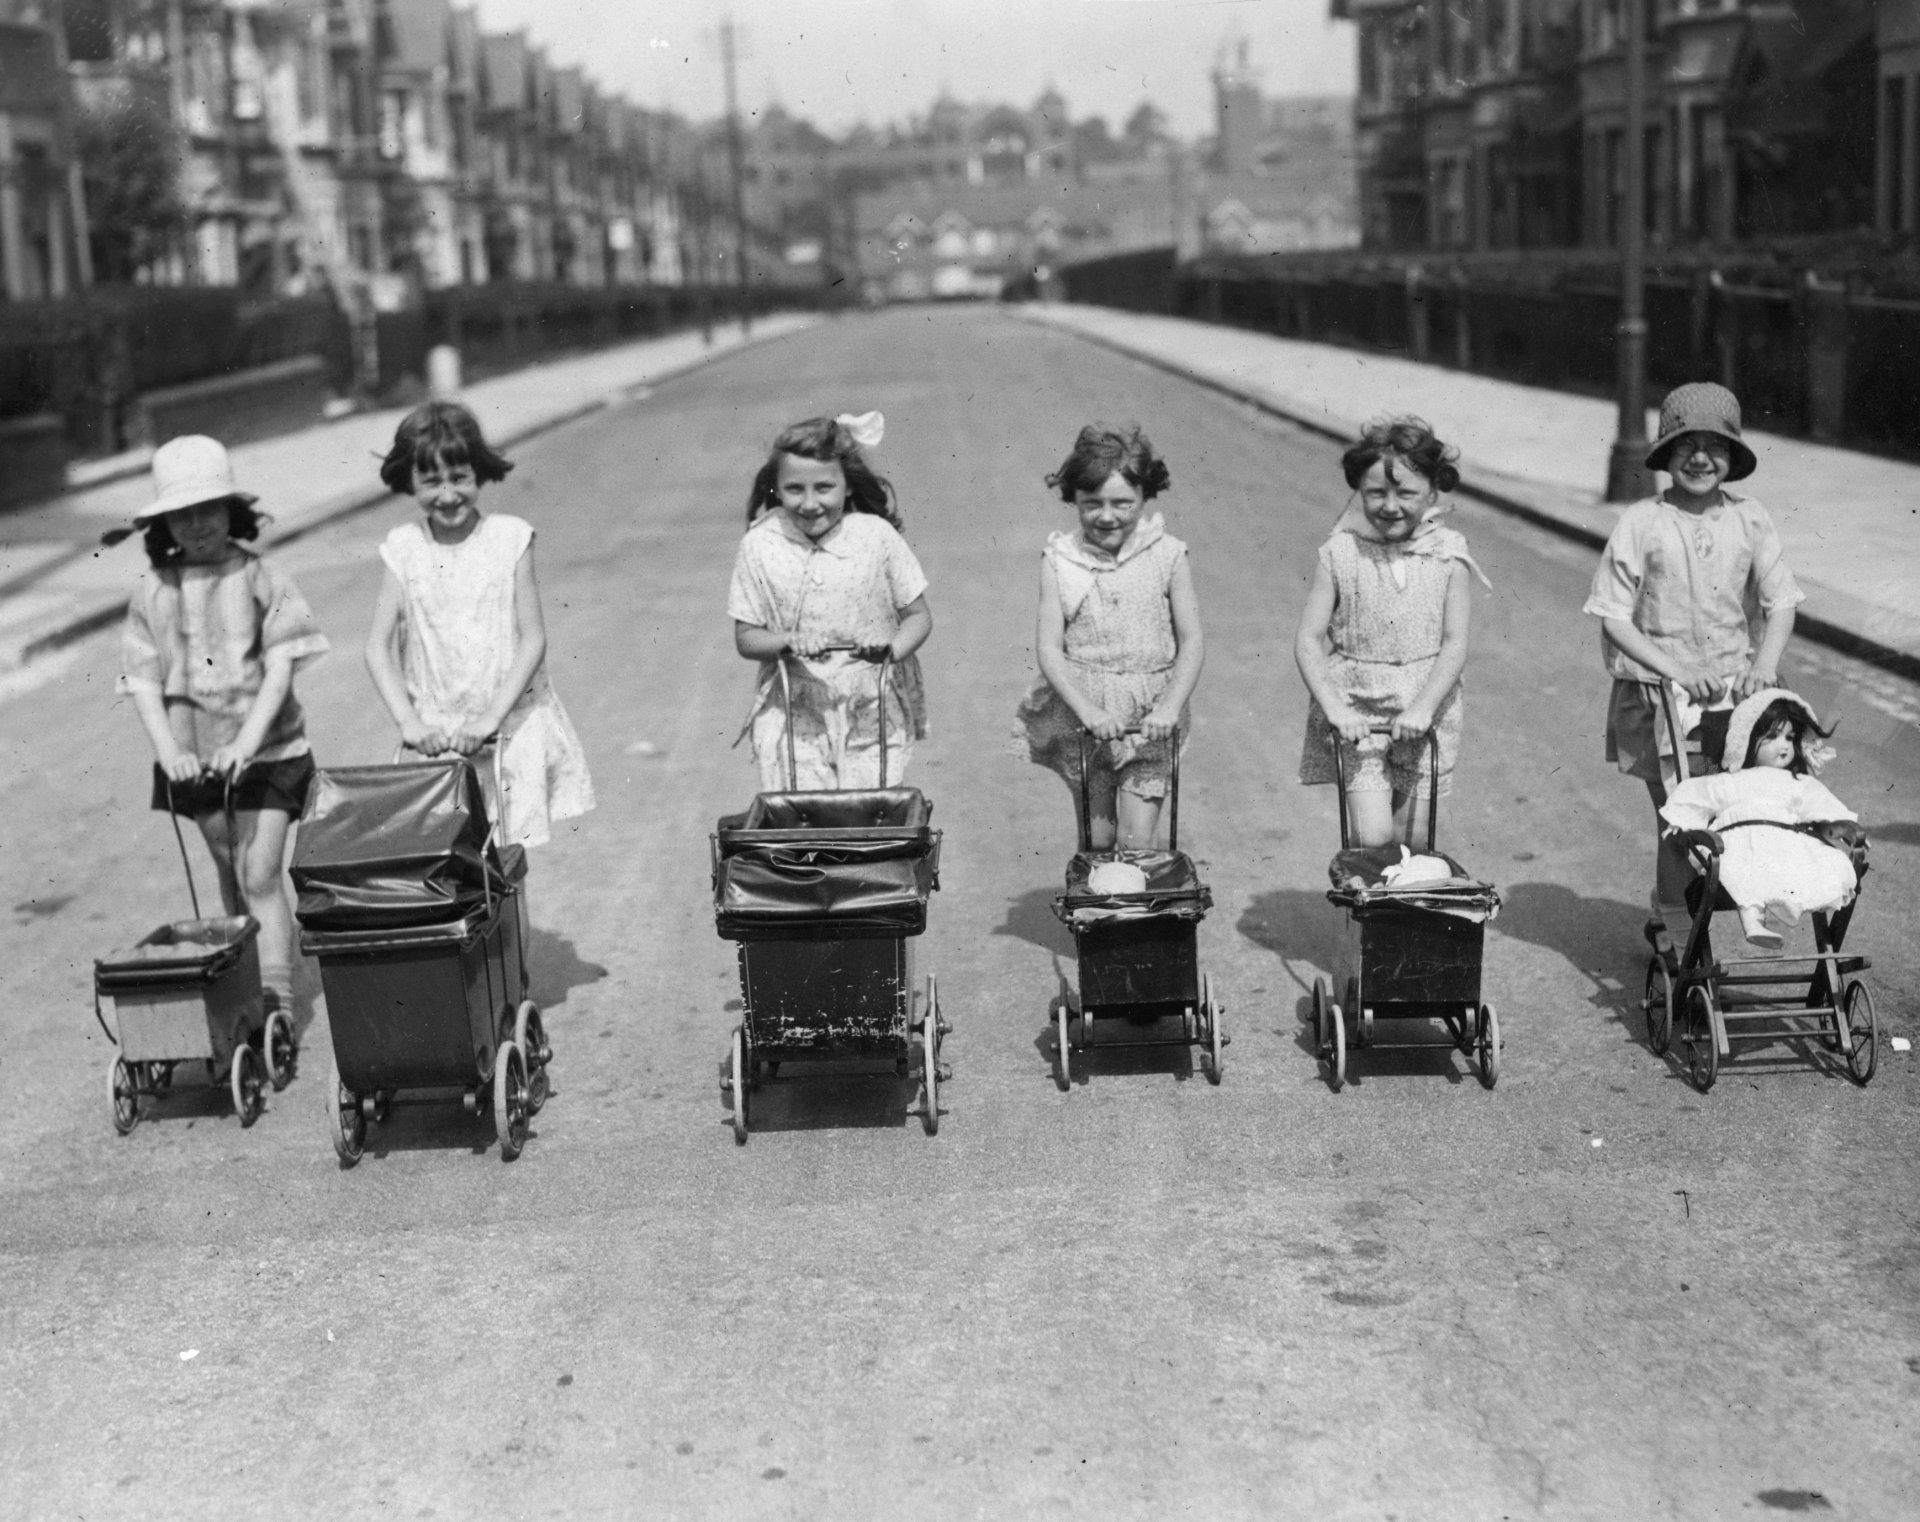 31 юли 1935 г.: Редица от щастливи малки момиченца, бутащи количките на своите кукли по улица по време на лятната ваканция. 